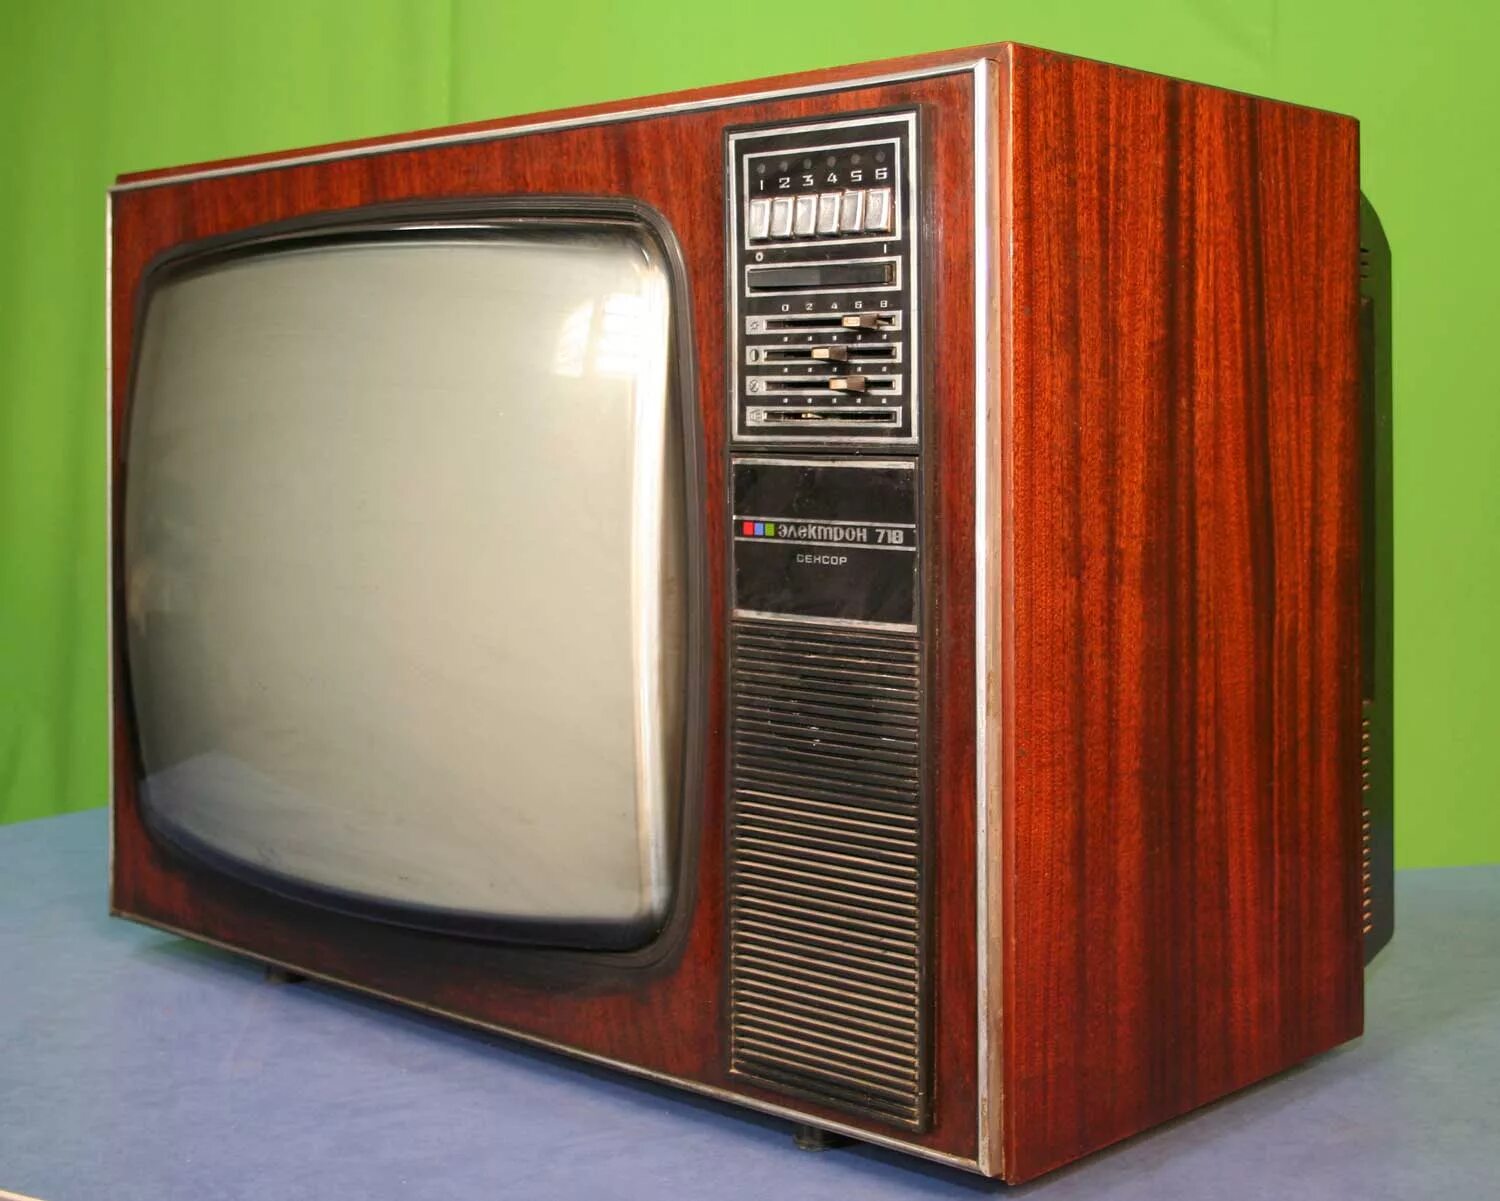 Куплю цветной телевизор. Цветной телевизор электрон 718. Телевизор Рубин 718. Ламповый телевизор электрон 718. Электрон 718 телевизор СССР цветной.